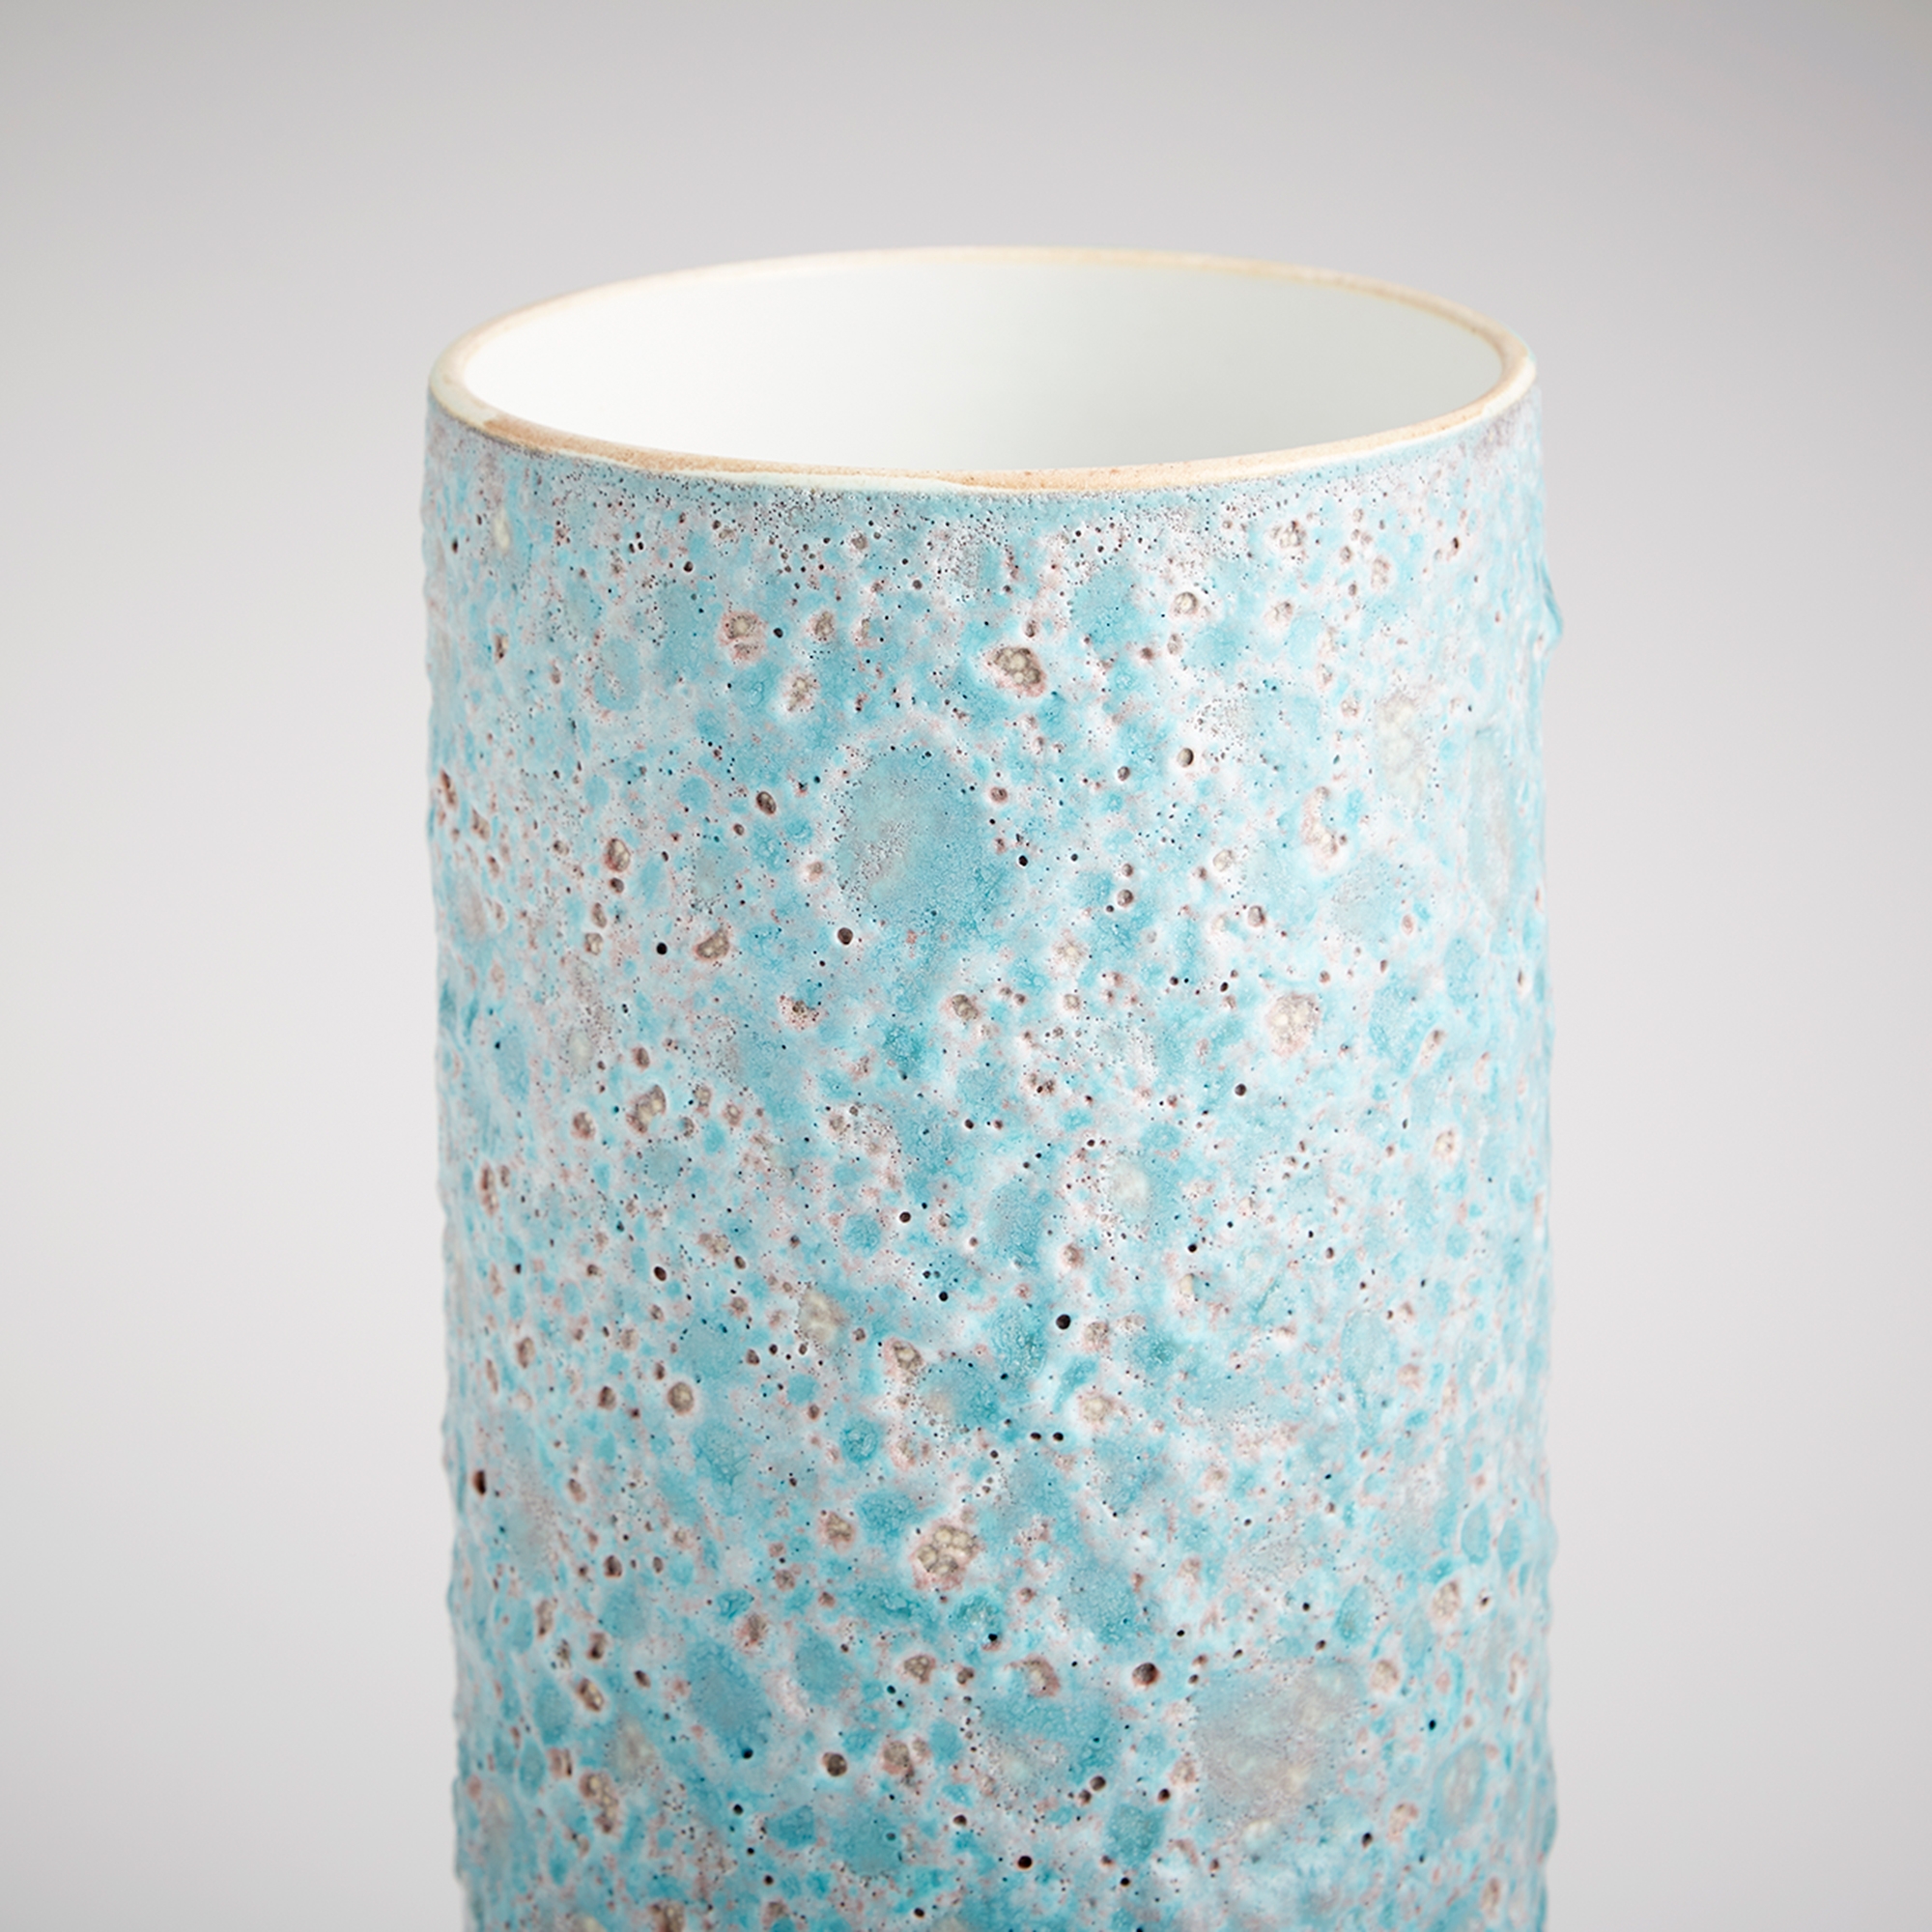 Sumba Vase - Image 1